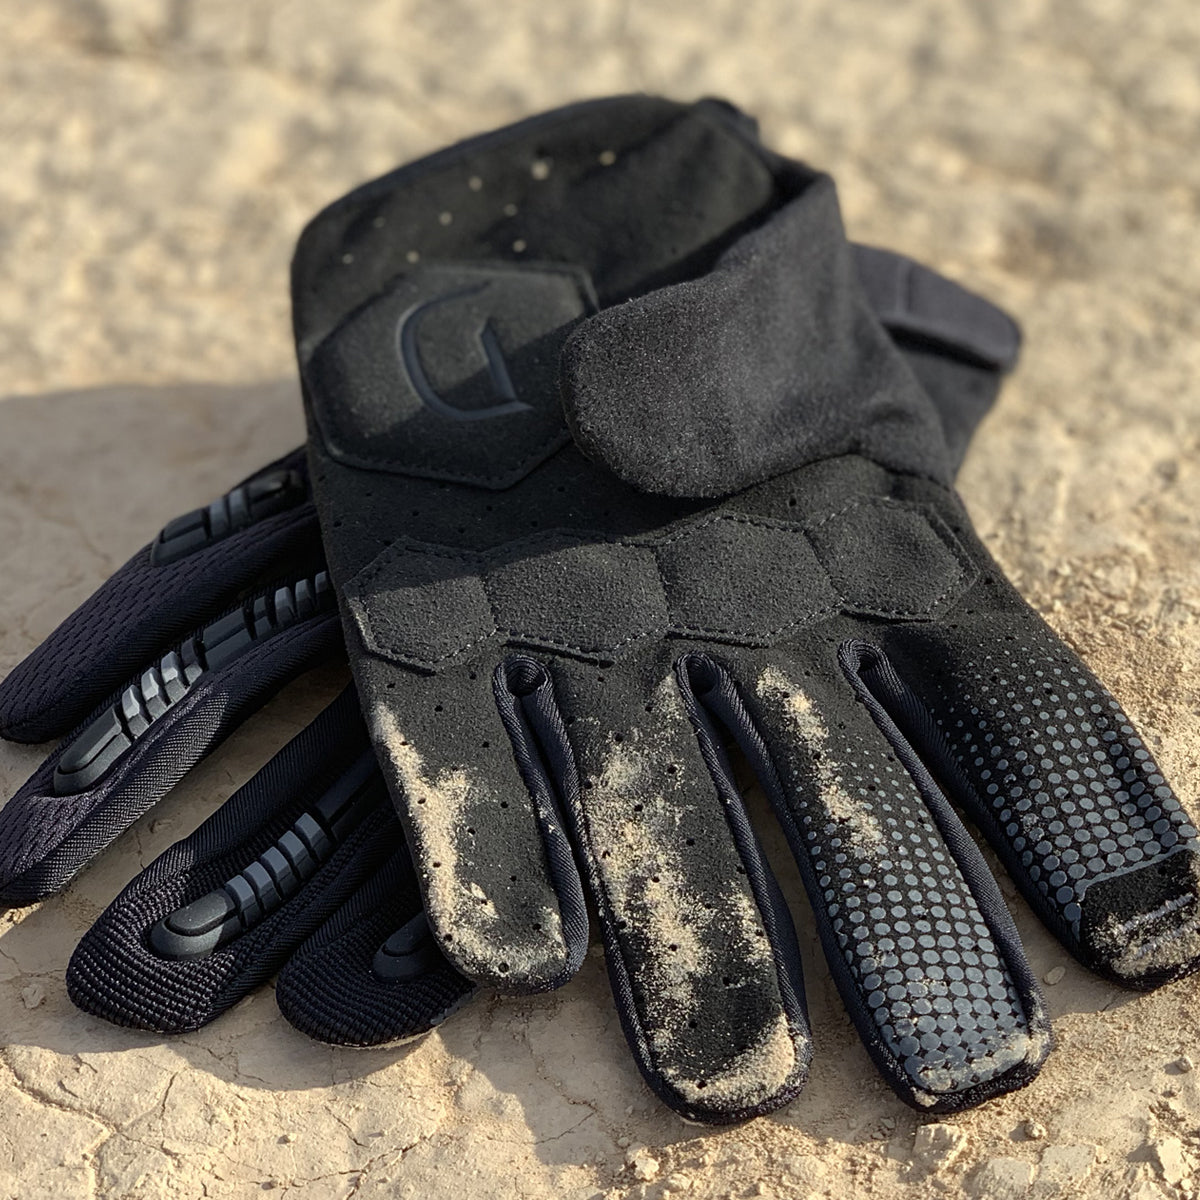 Gants de Protection Grip Gel  Bike gloves, Mtb gloves, Gloves